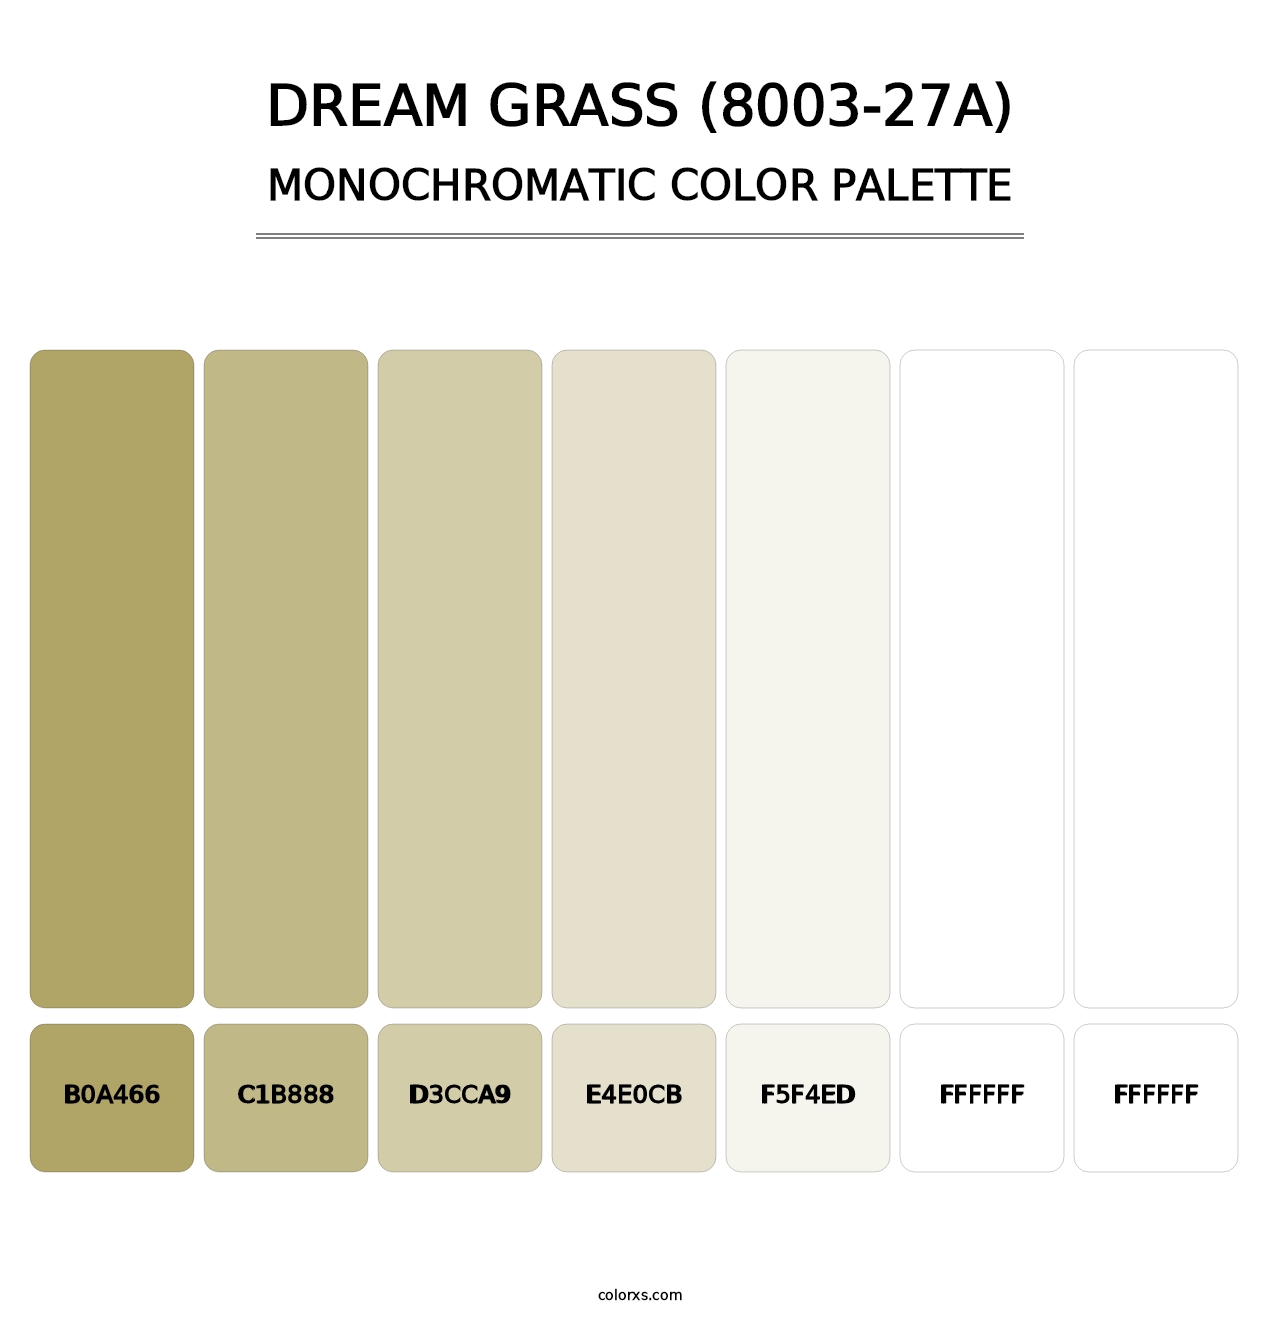 Dream Grass (8003-27A) - Monochromatic Color Palette